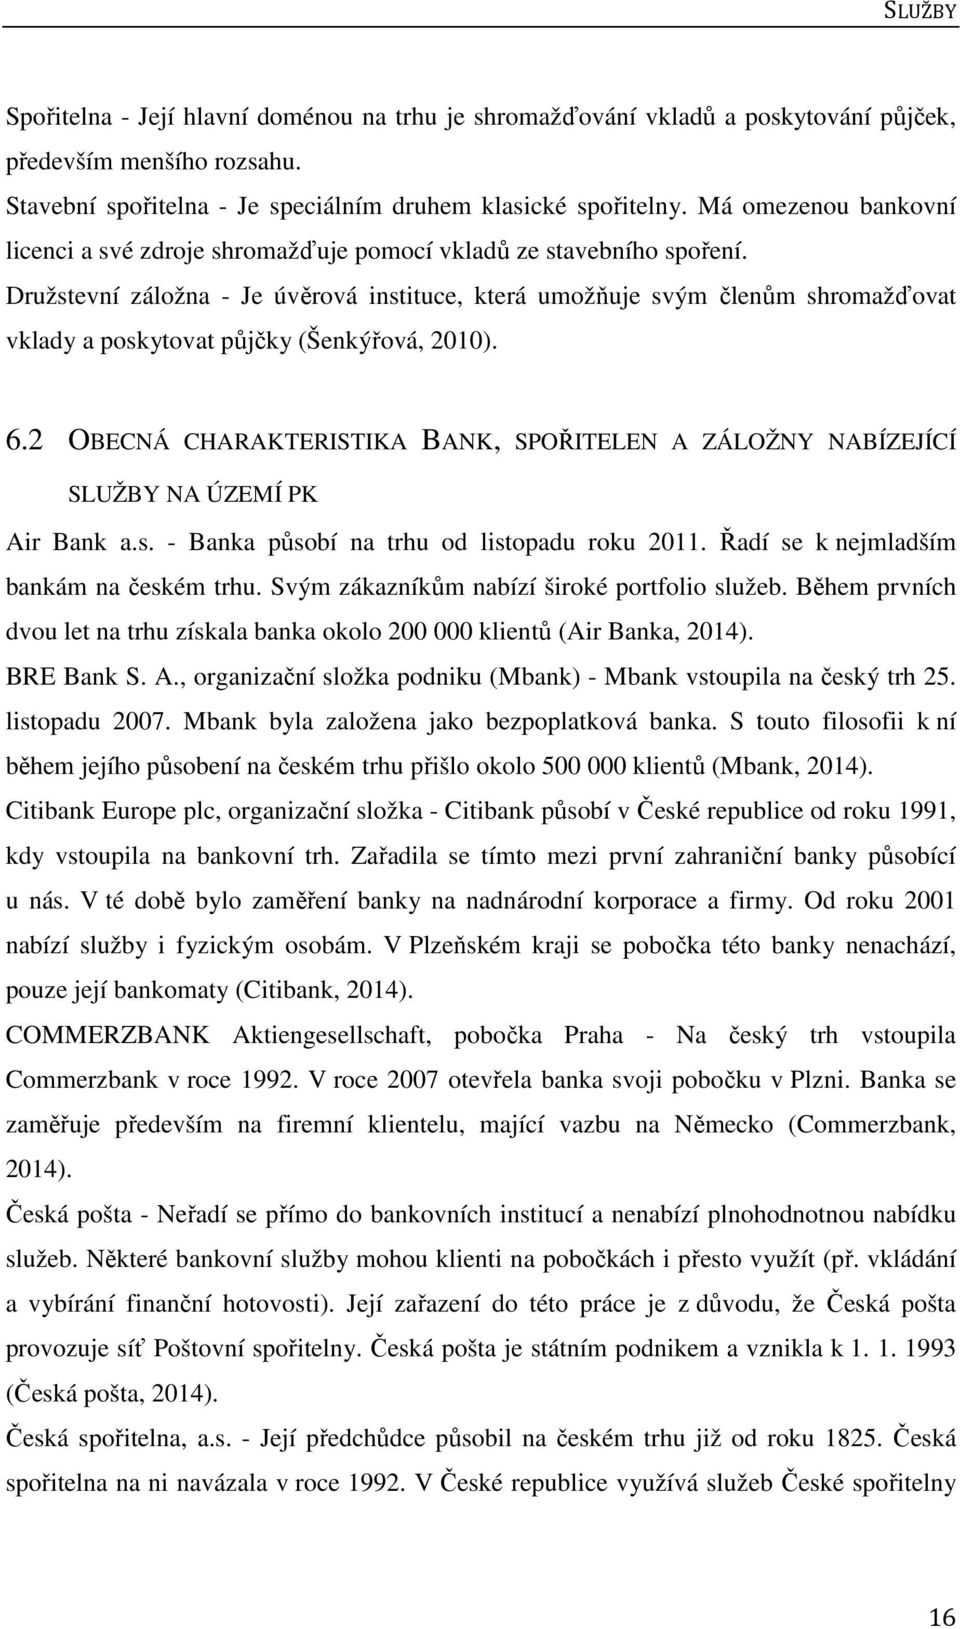 Družstevní záložna - Je úvěrová instituce, která umožňuje svým členům shromažďovat vklady a poskytovat půjčky (Šenkýřová, 2010). 6.